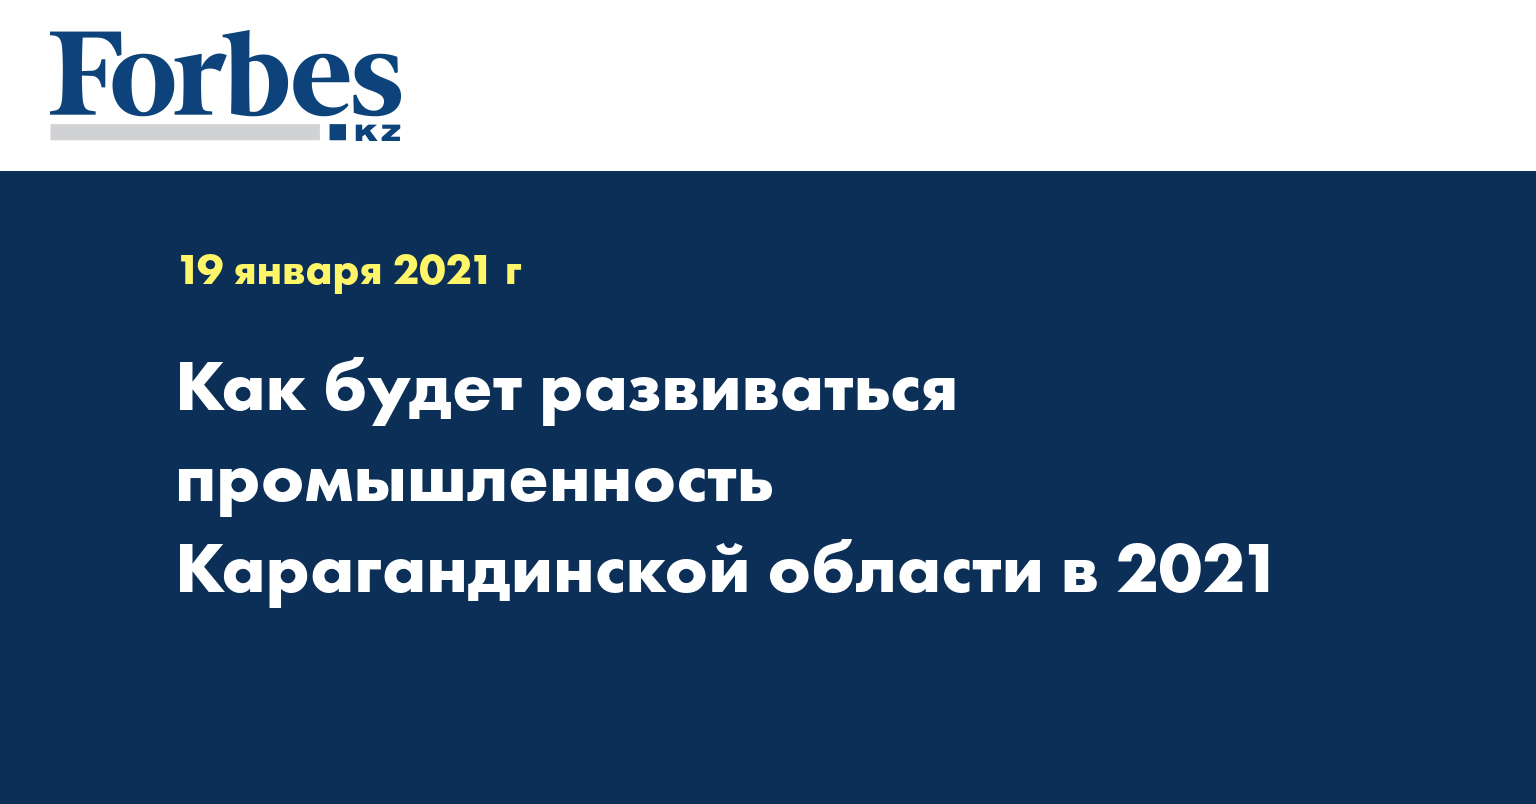 Как будет развиваться промышленность Карагандинской области в 2021